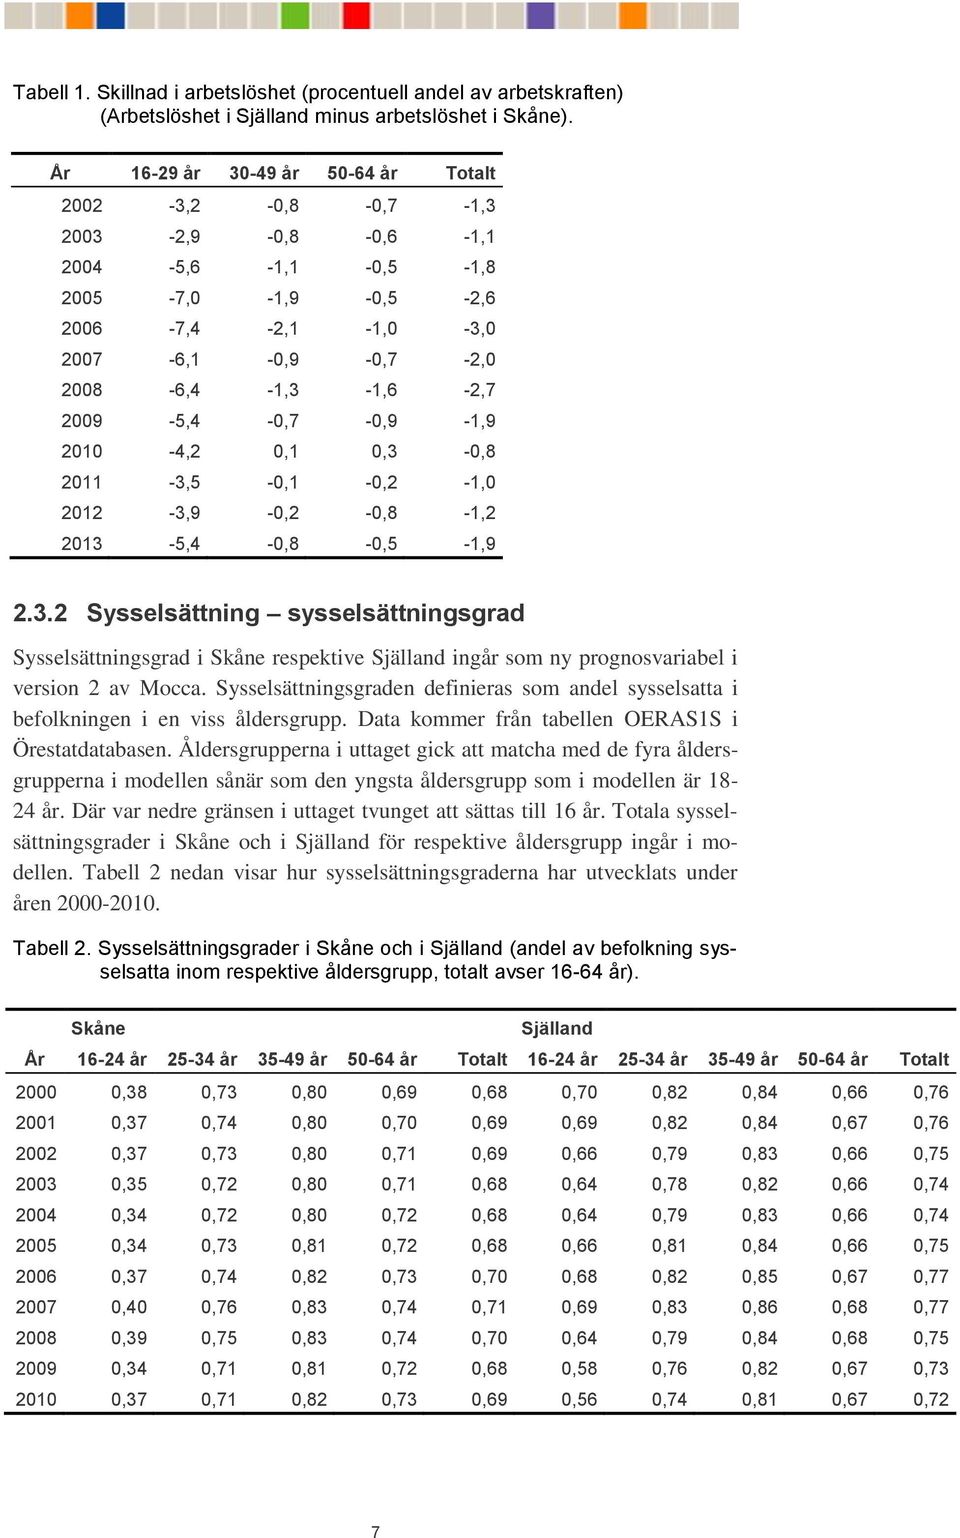 2009-5,4-0,7-0,9-1,9 2010-4,2 0,1 0,3-0,8 2011-3,5-0,1-0,2-1,0 2012-3,9-0,2-0,8-1,2 2013-5,4-0,8-0,5-1,9 2.3.2 Sysselsättning sysselsättningsgrad Sysselsättningsgrad i Skåne respektive Själland ingår som ny prognosvariabel i version 2 av Mocca.